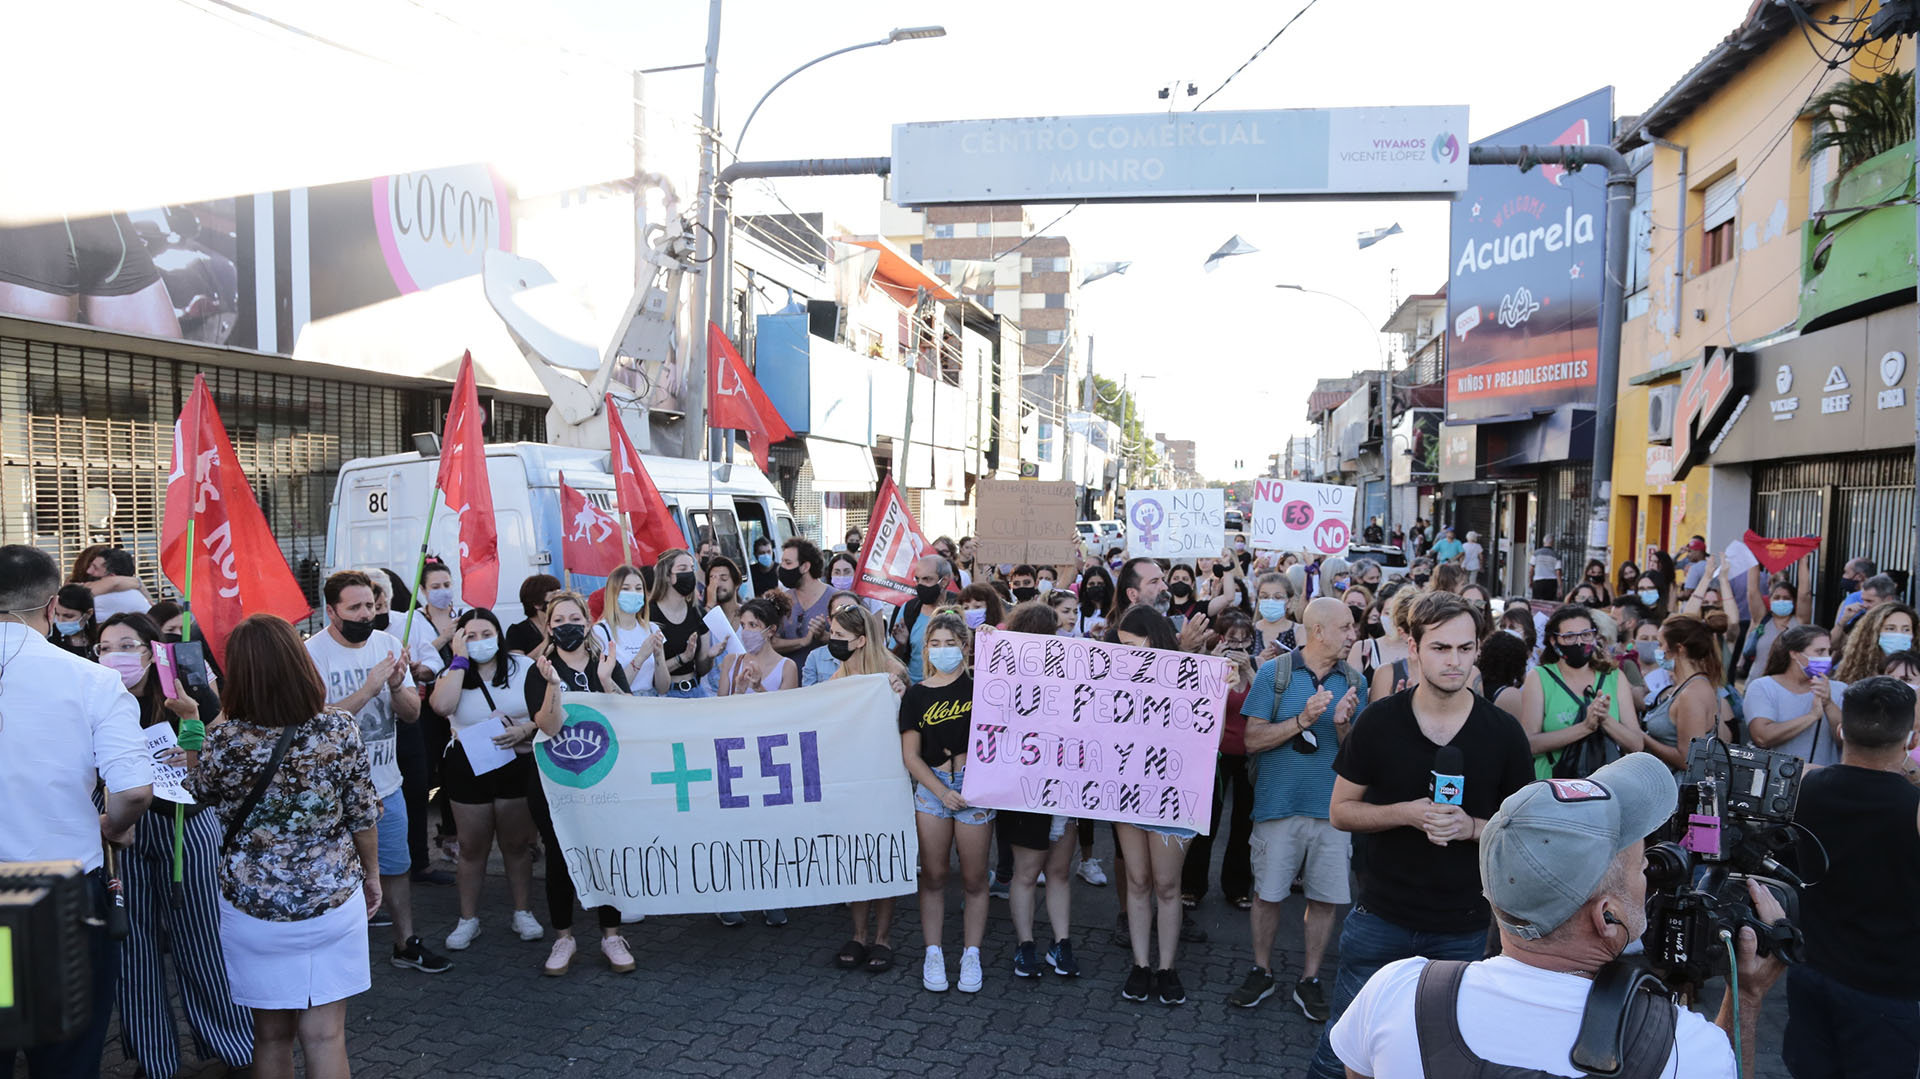 Distintas agrupaciones feministas convocaron a una marcha para reclamar “Justicia” y exigir la efectiva implementación de la Educación Sexual Integral (ESI) para erradicar la cultura de la violación